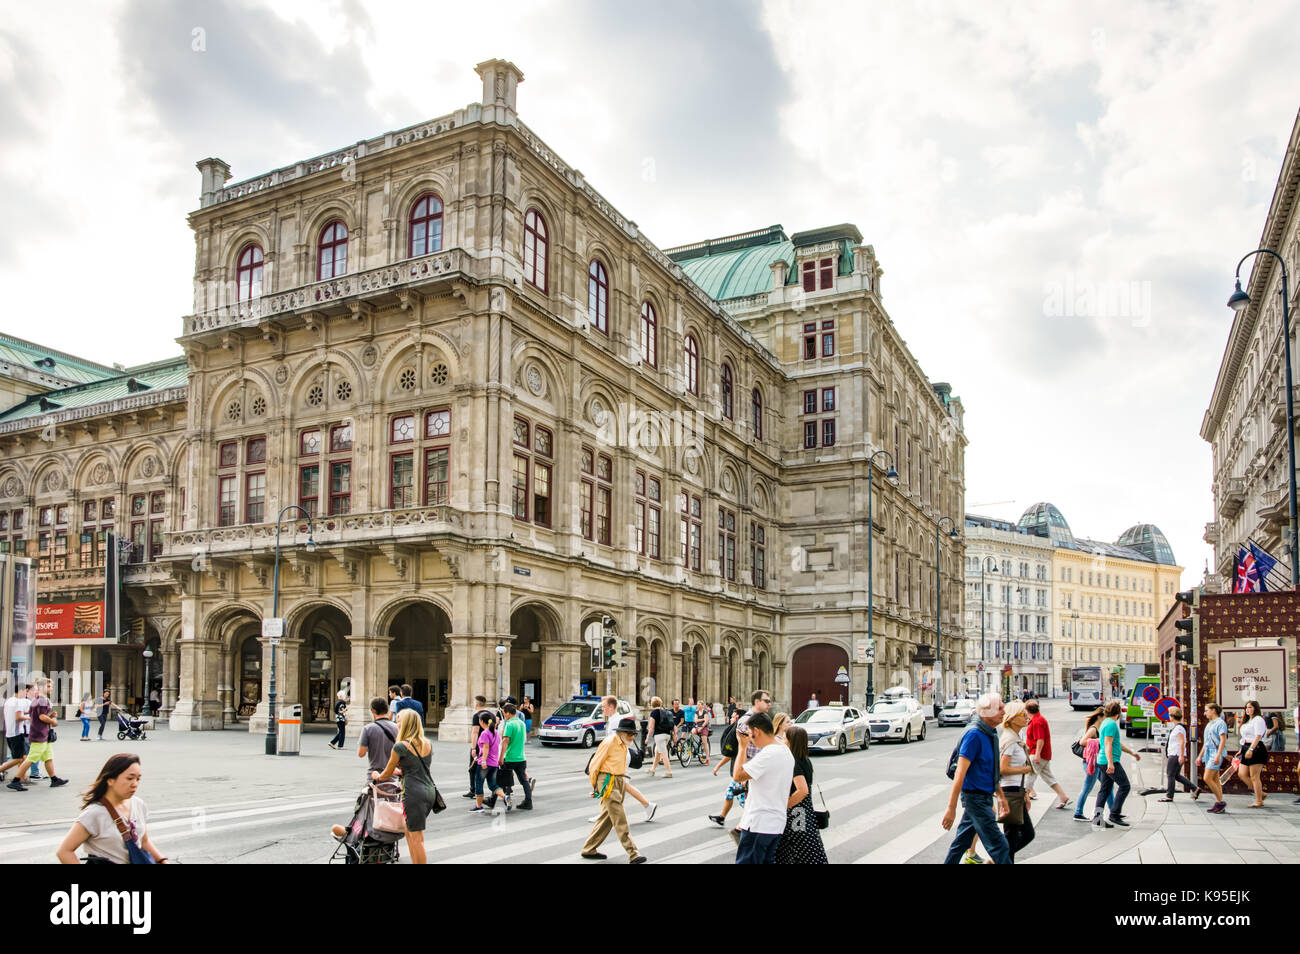 Vienne, Autriche - août 28 : les touristes à l'opéra d'état de vienne, autriche Le 28 août 2017. Banque D'Images